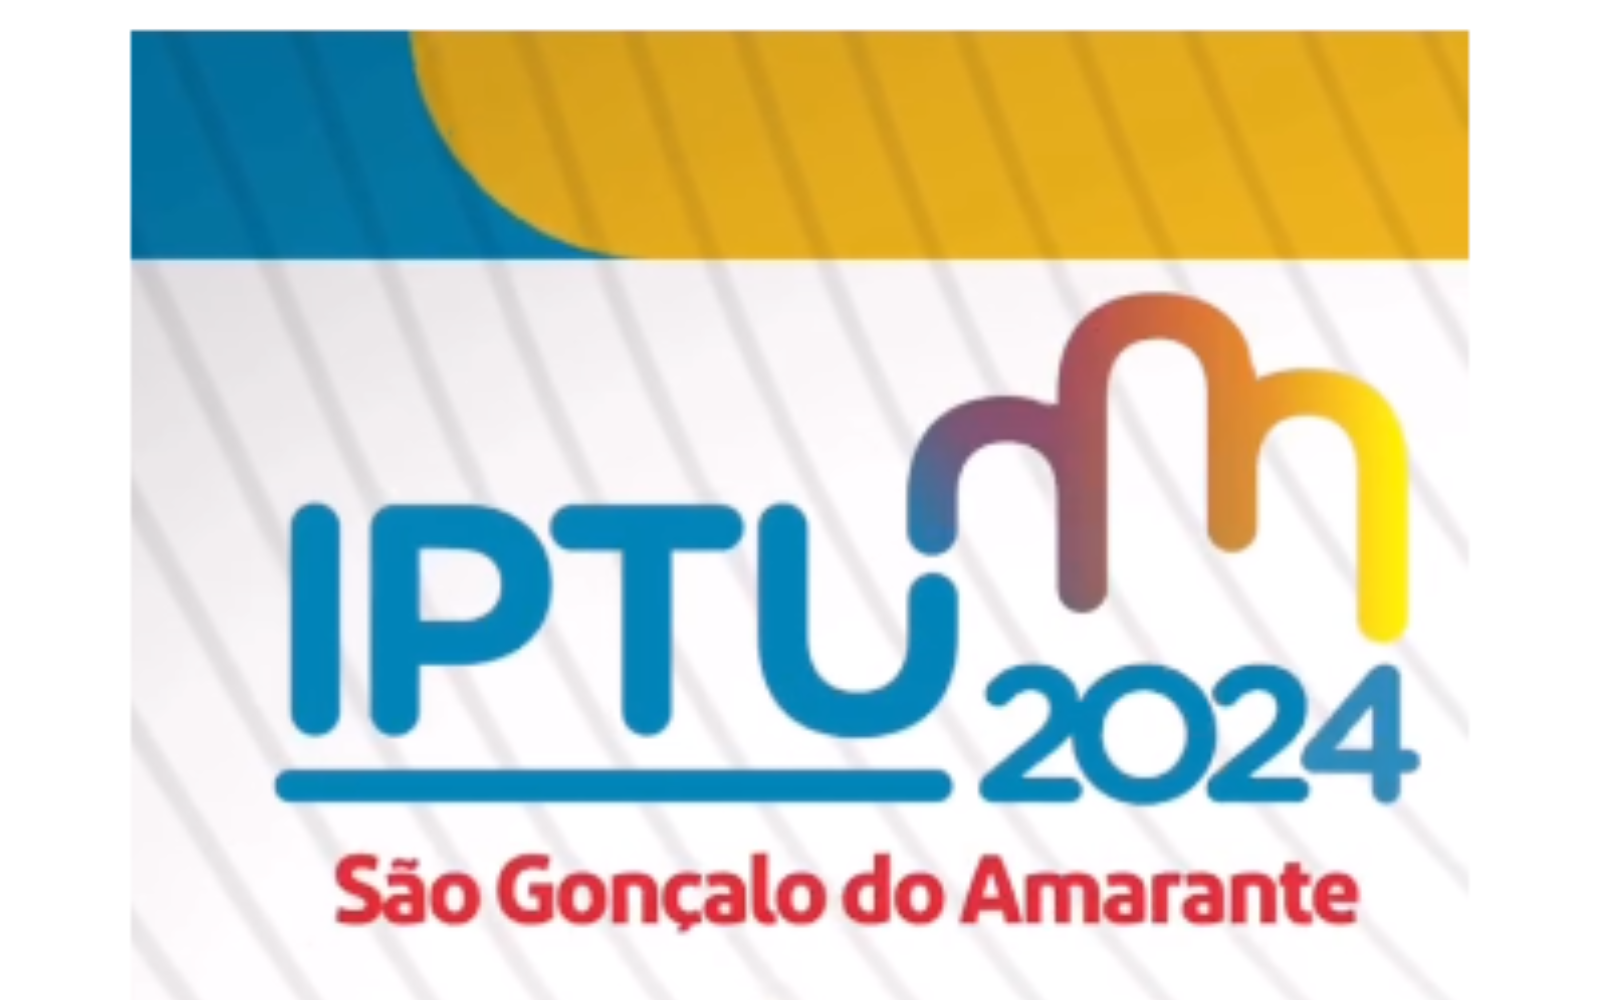 IPTU 2024: São Gonçalo do Amarante terá 20% de desconto em cota única (Imagem: Reprodução / Redes Sociais)